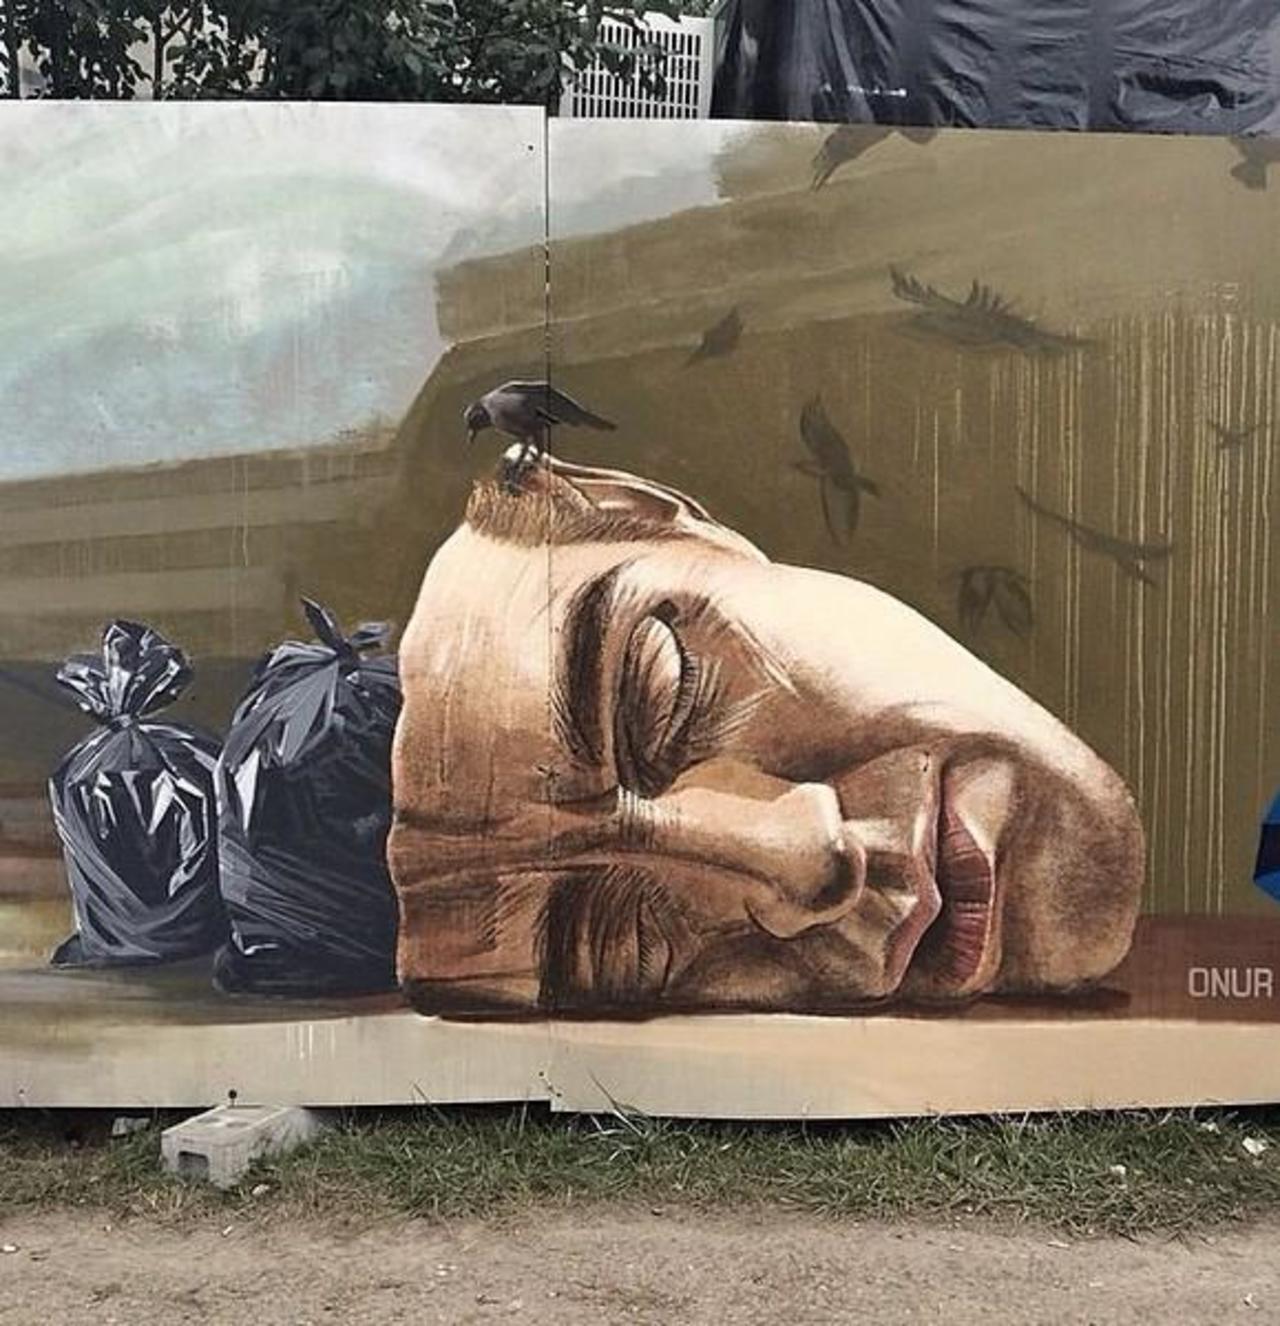 "Artist ONUR new Street Art piece located in Biel, Switzerland #art #graffiti #mural #streetart Vuile gedachten" https://t.co/QebtdzO1e5